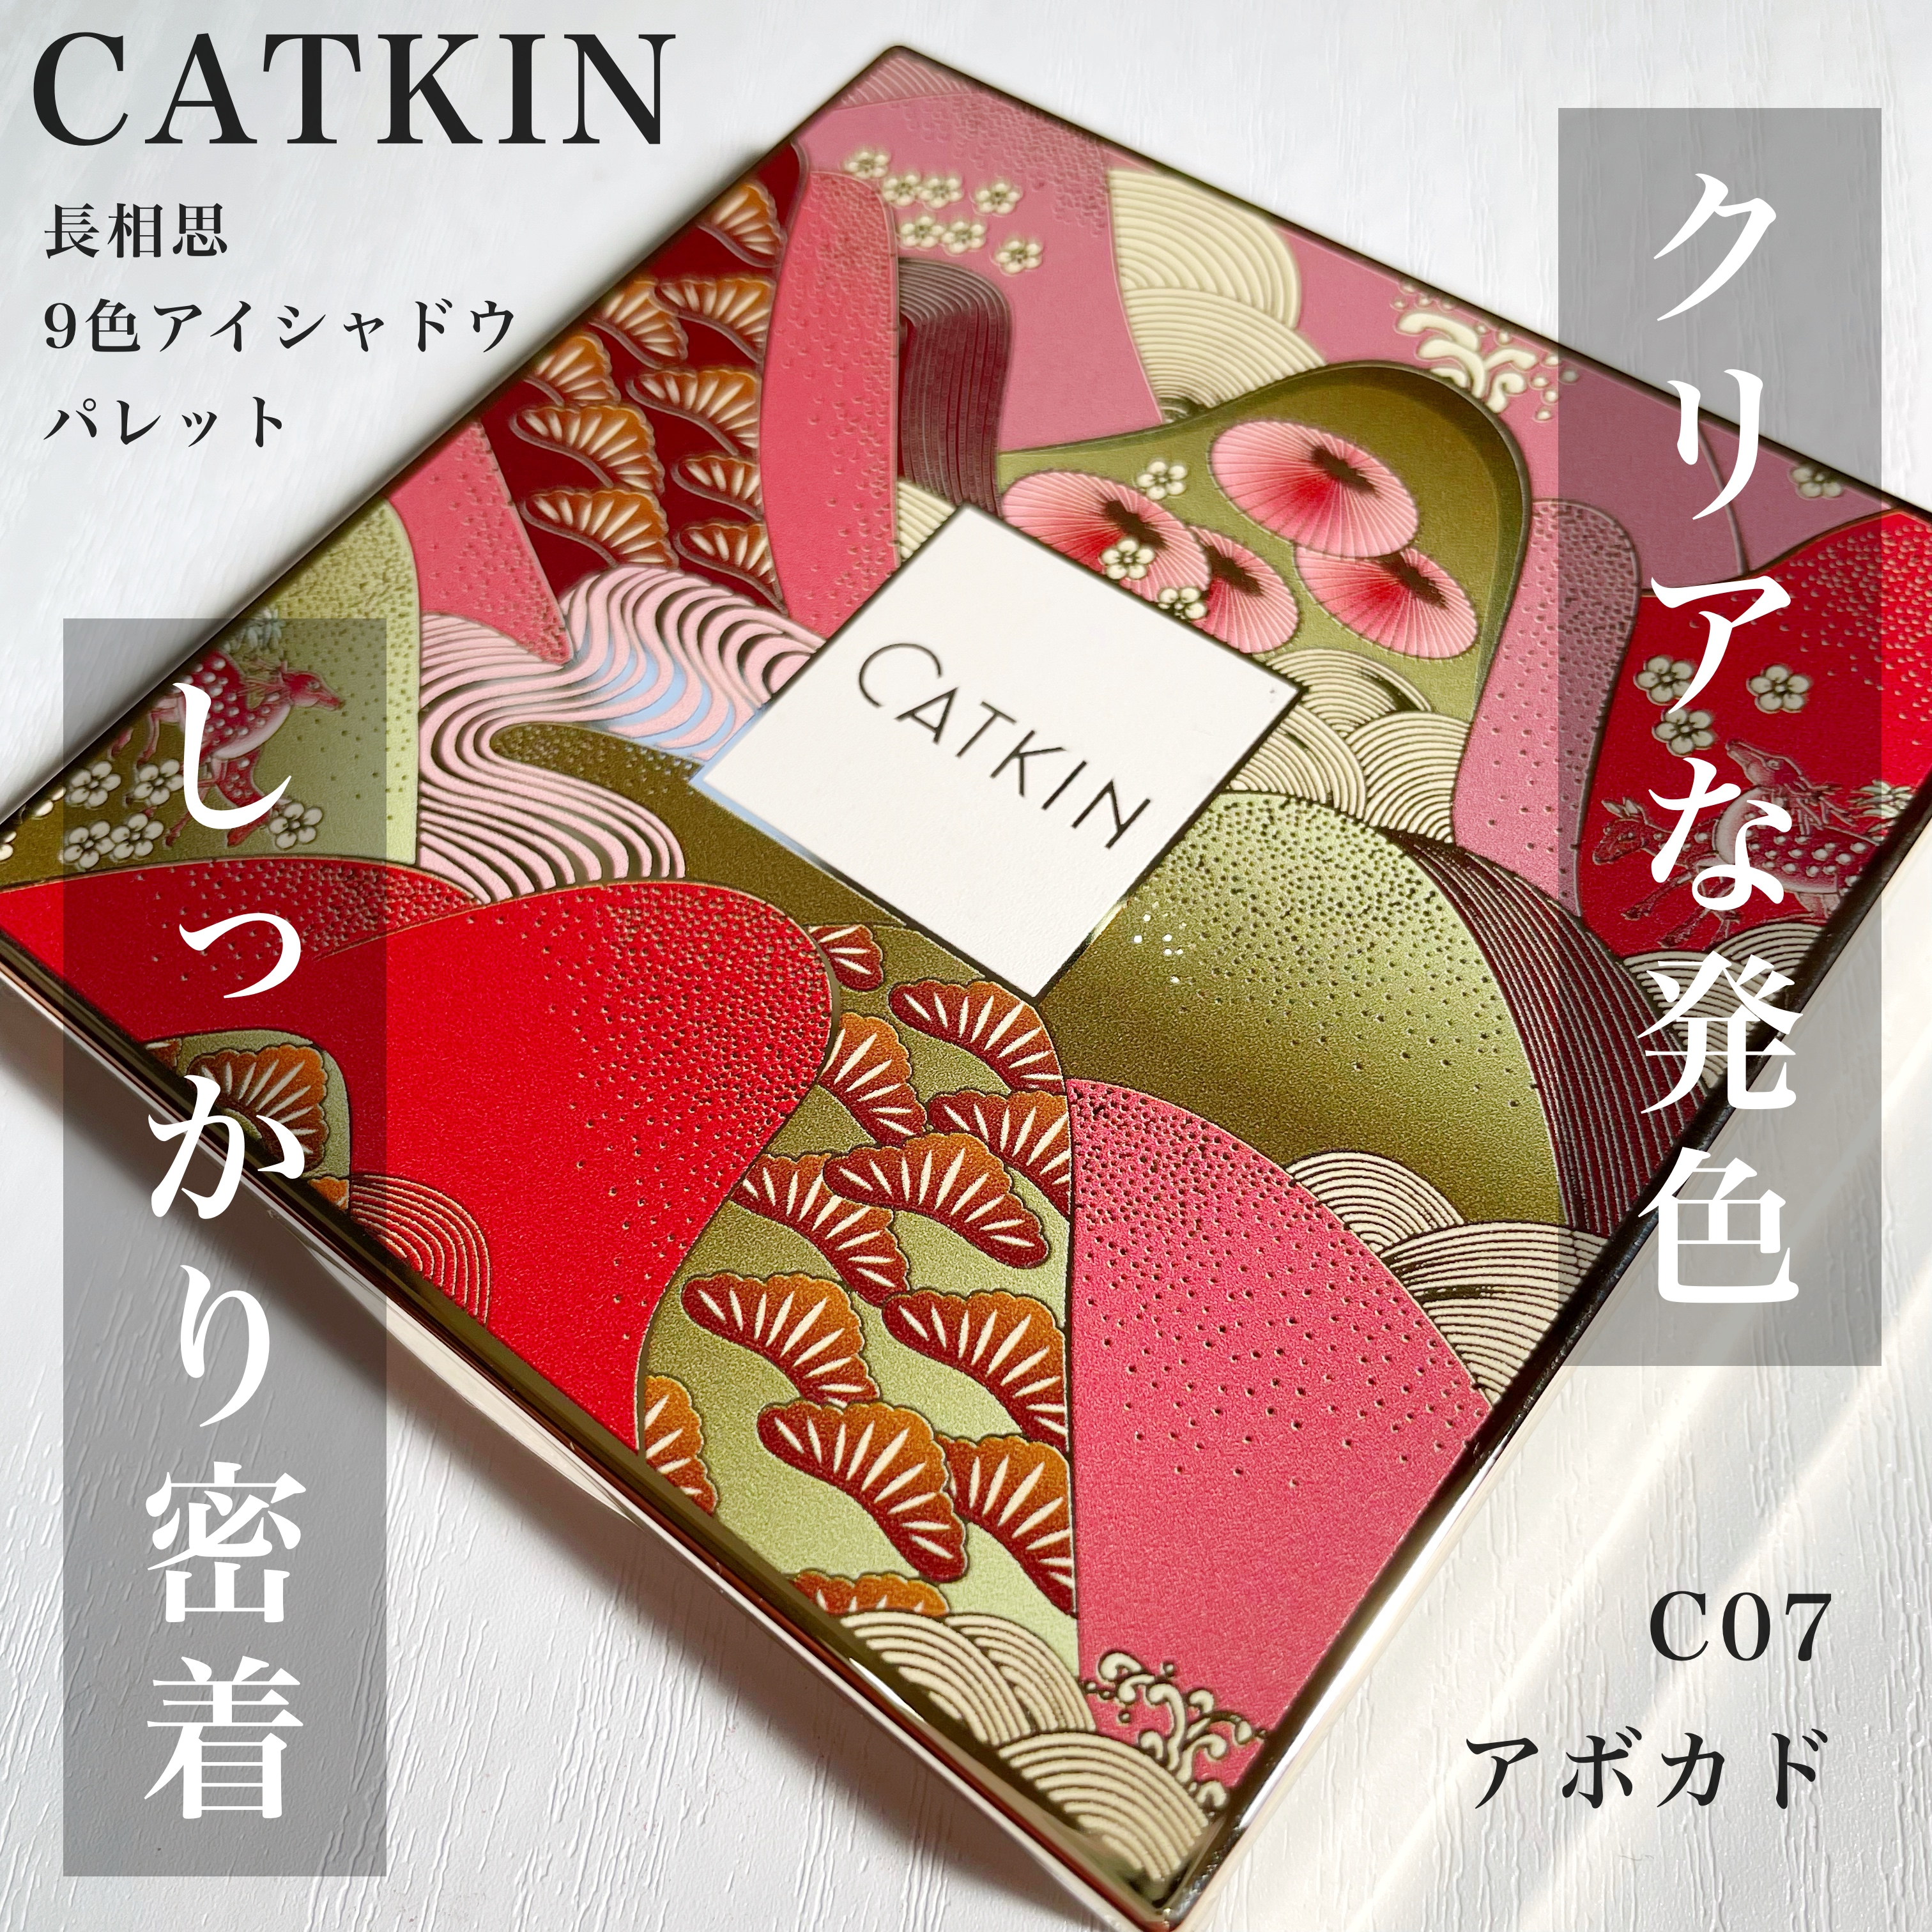 CATKIN(カトゥキン) 長相思9色アイシャドウパレットの良い点・メリットに関するKeiさんの口コミ画像1